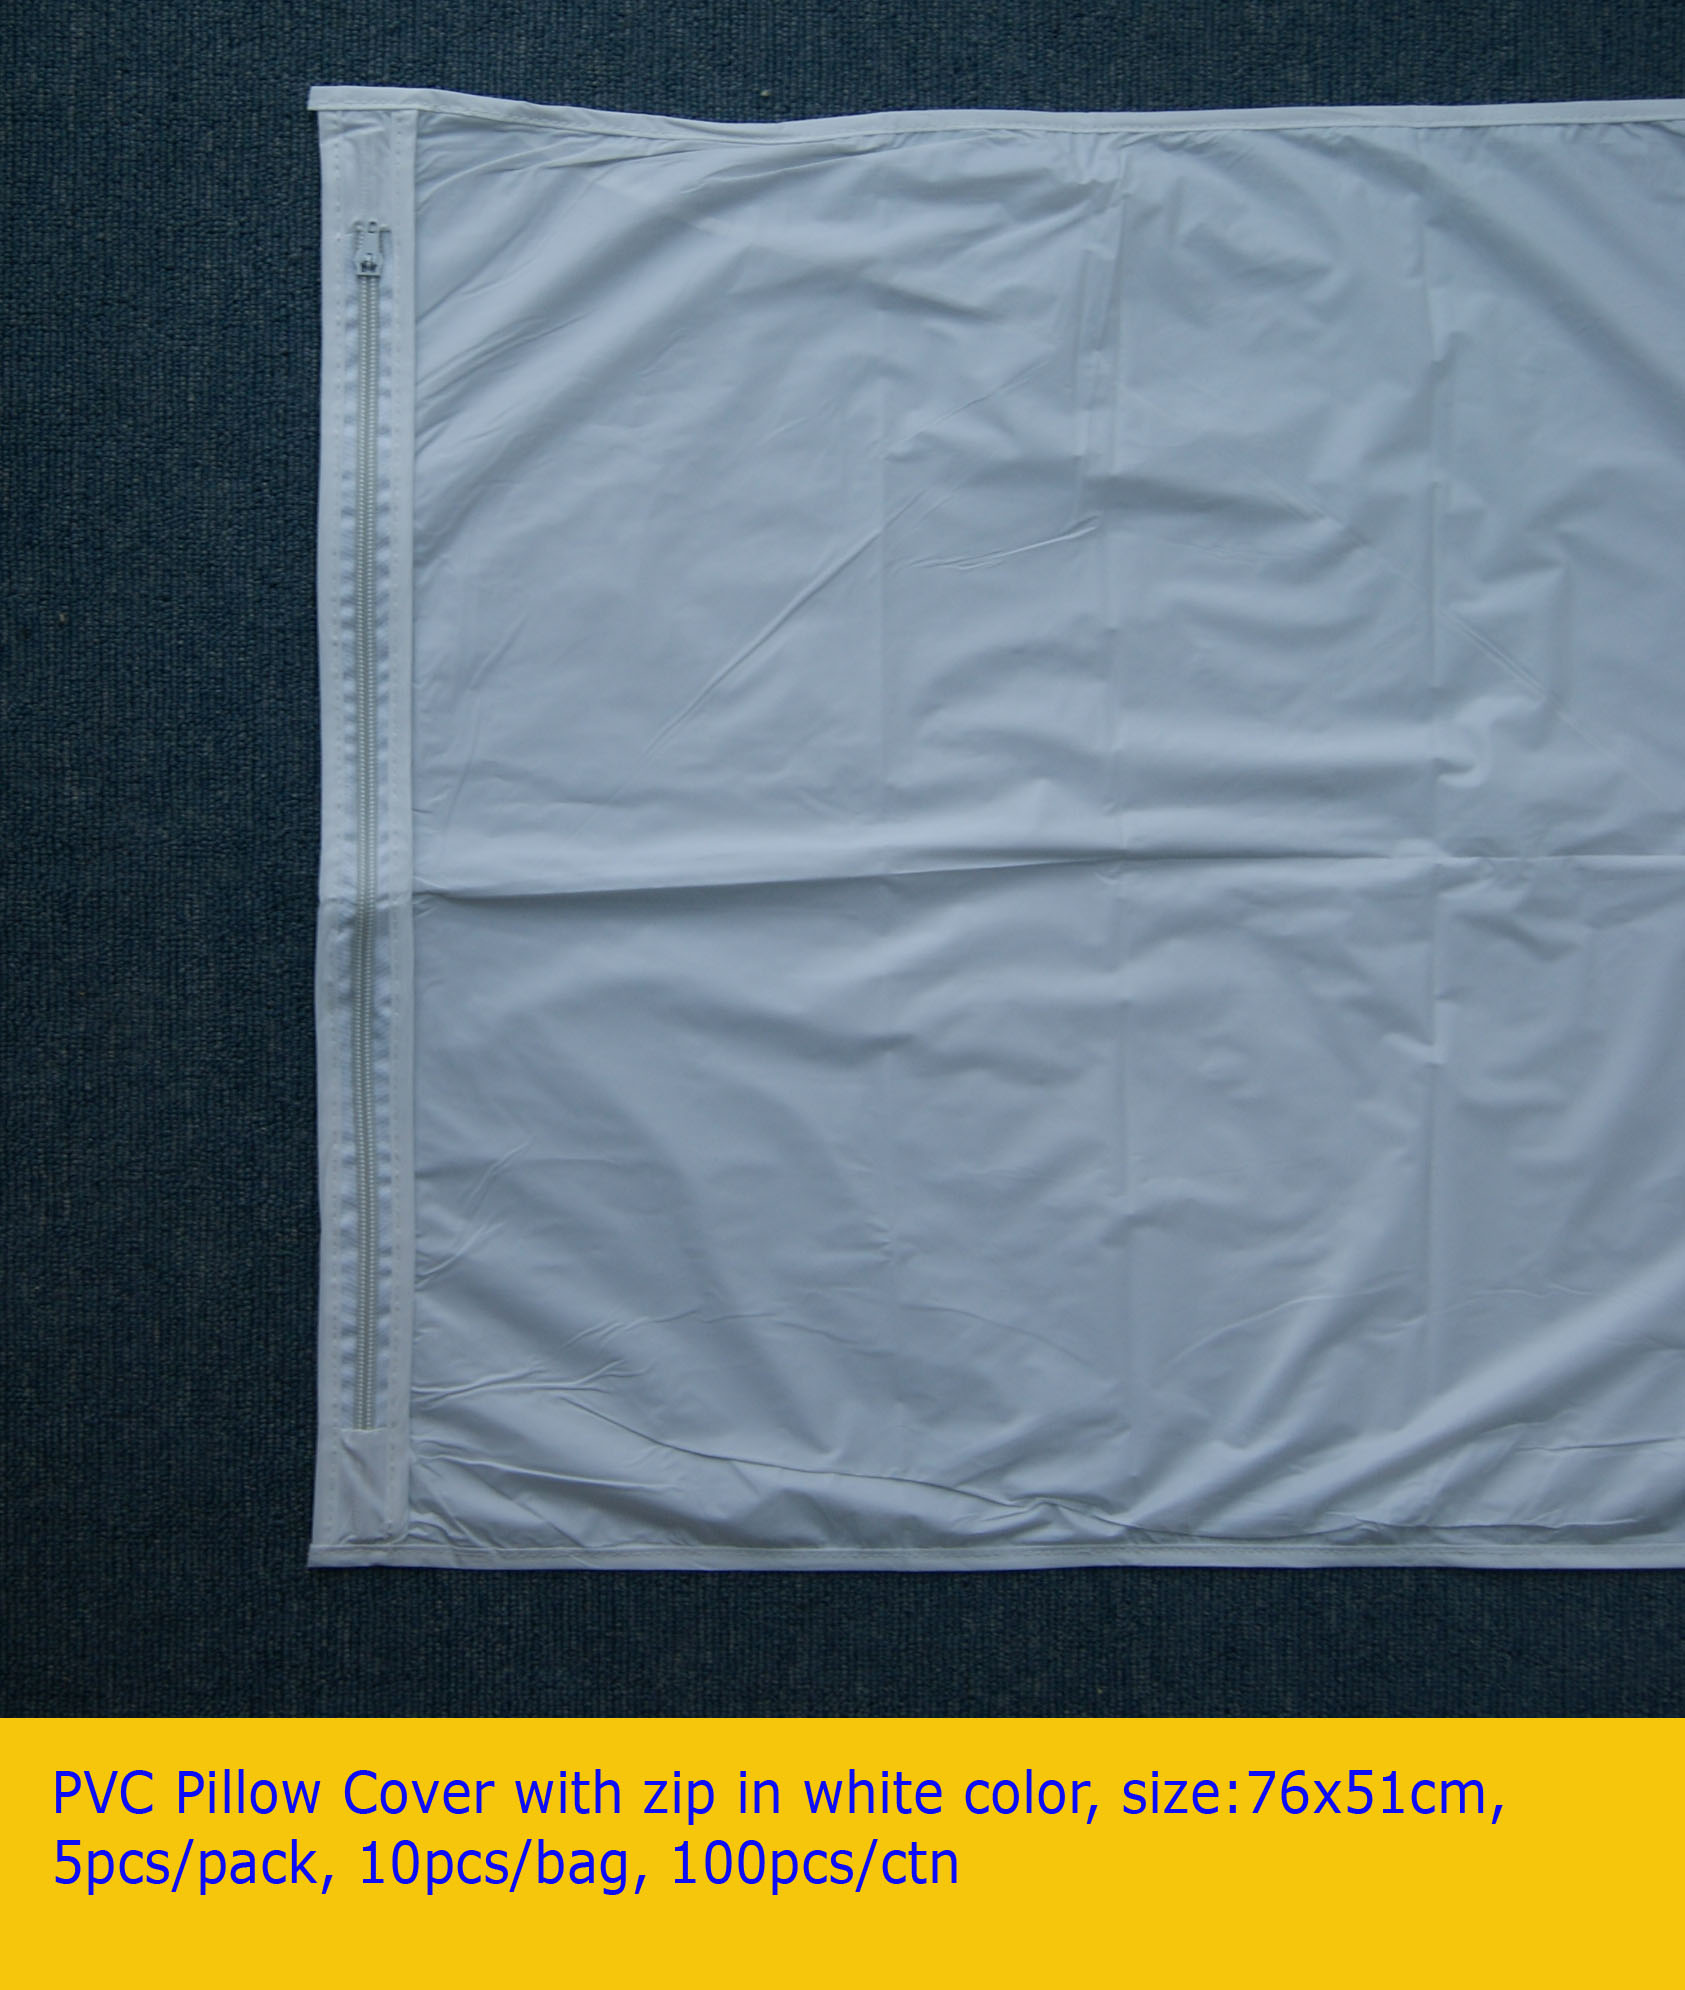 Cubierta de almohada de PVC con cremallera